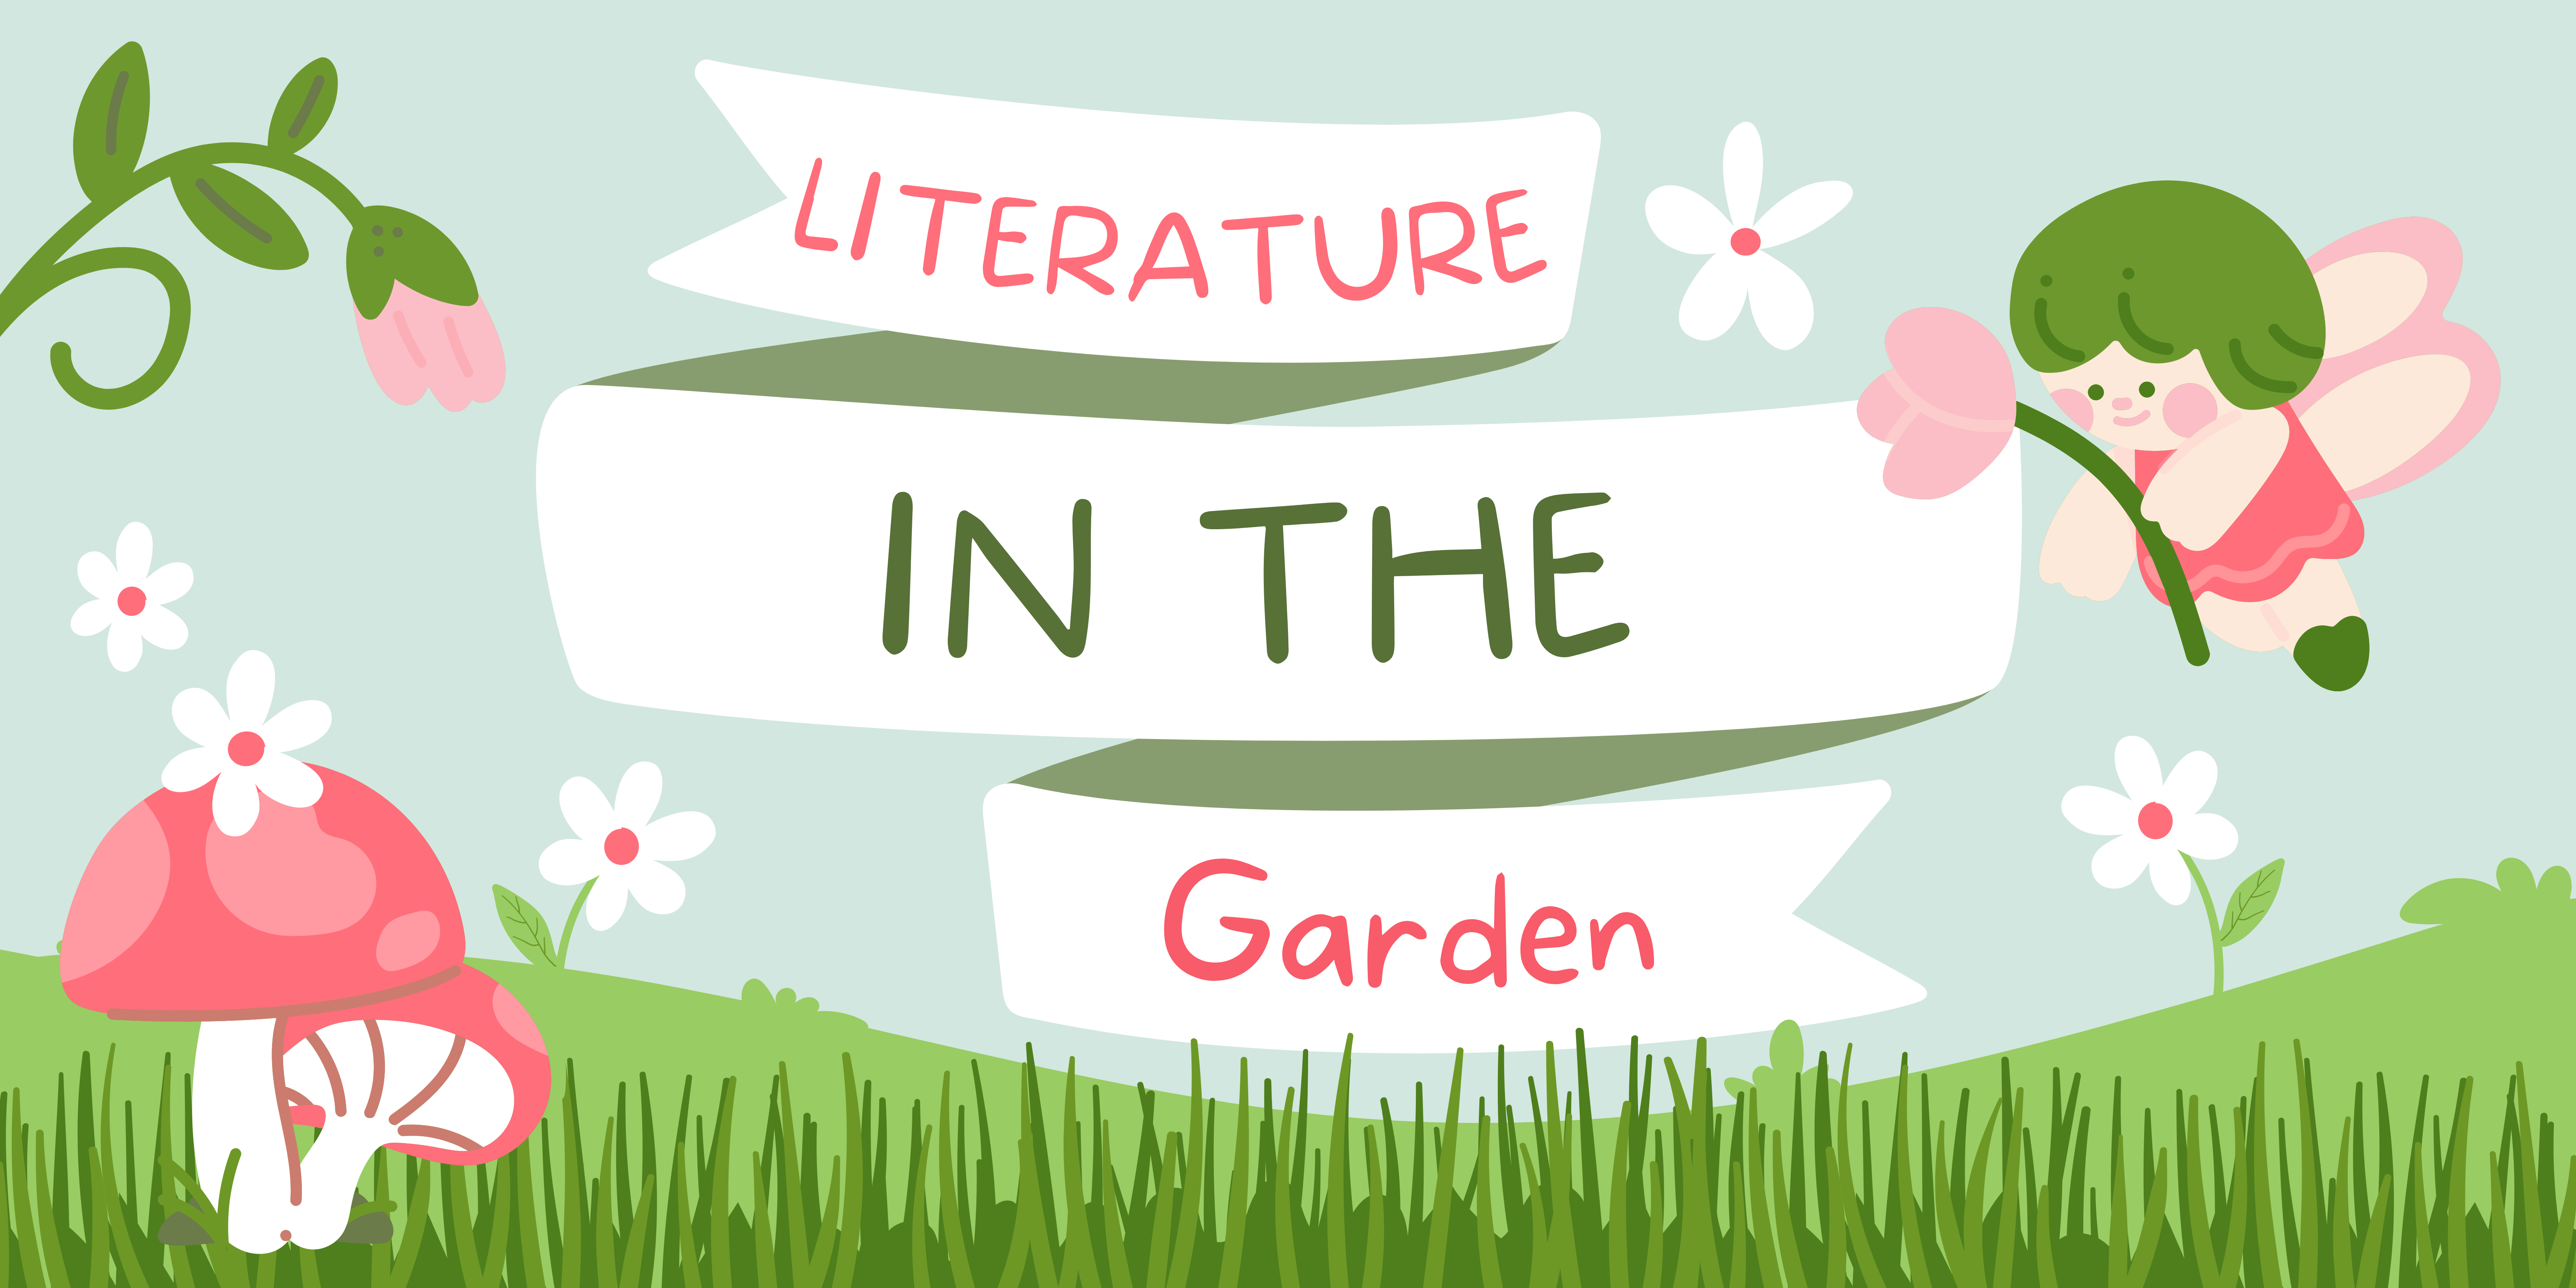 Literature in the garden